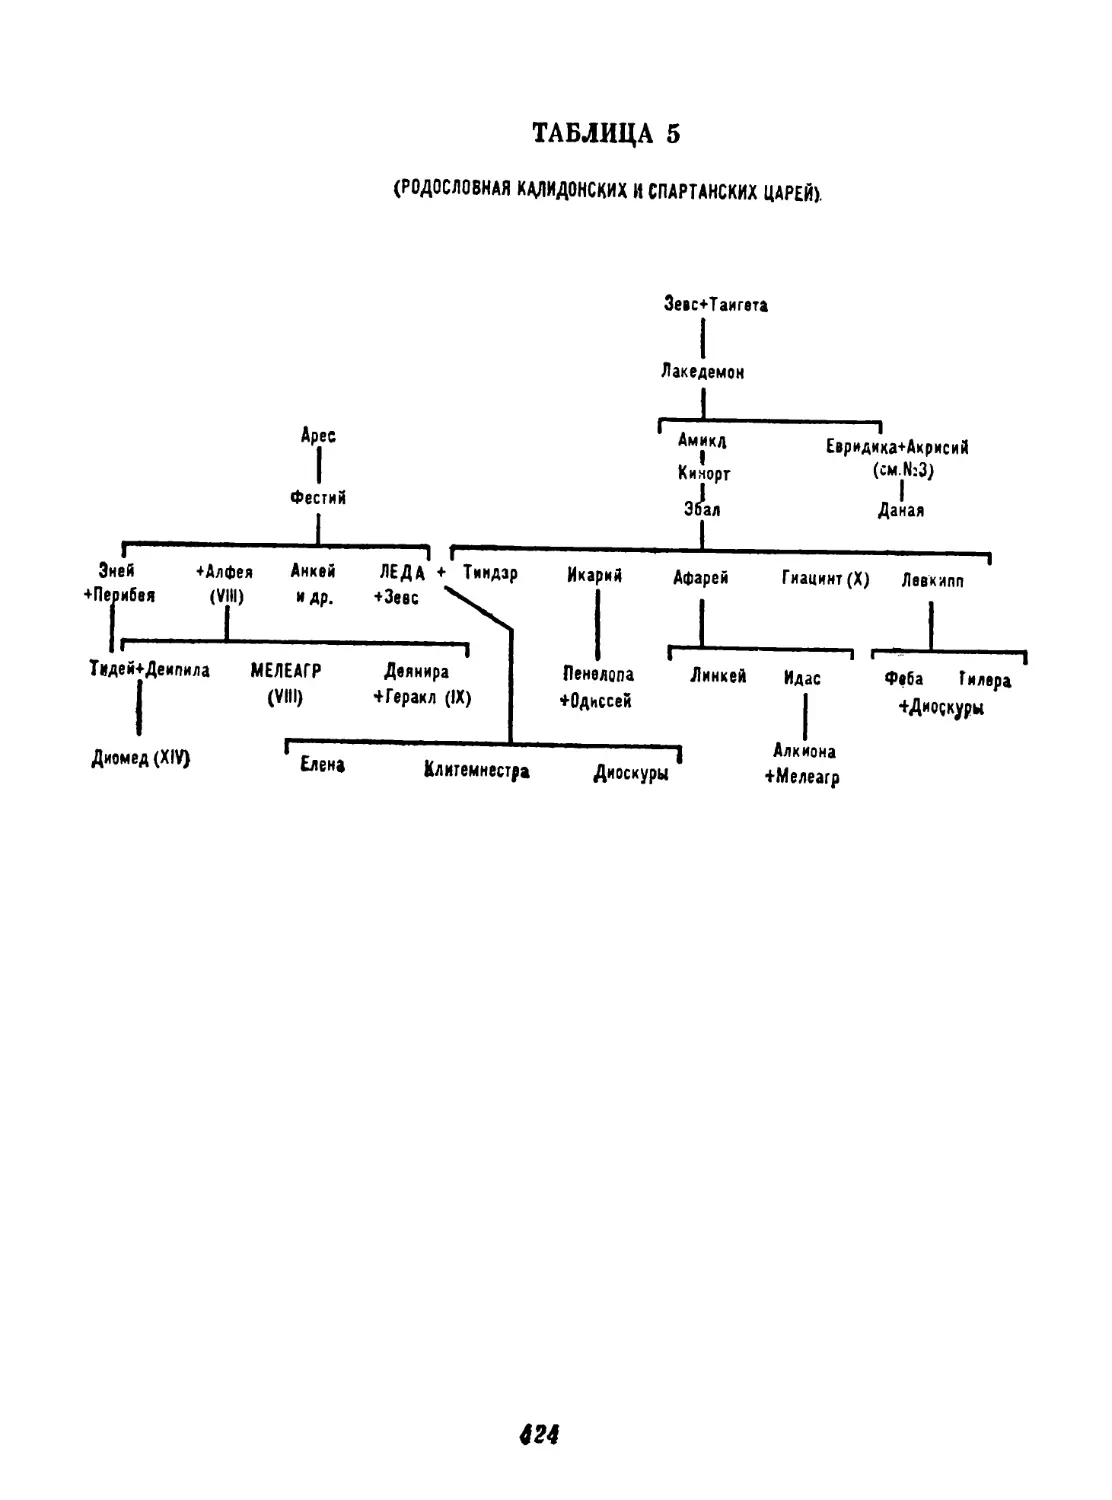 Таблица 6. Родословная афинских царей